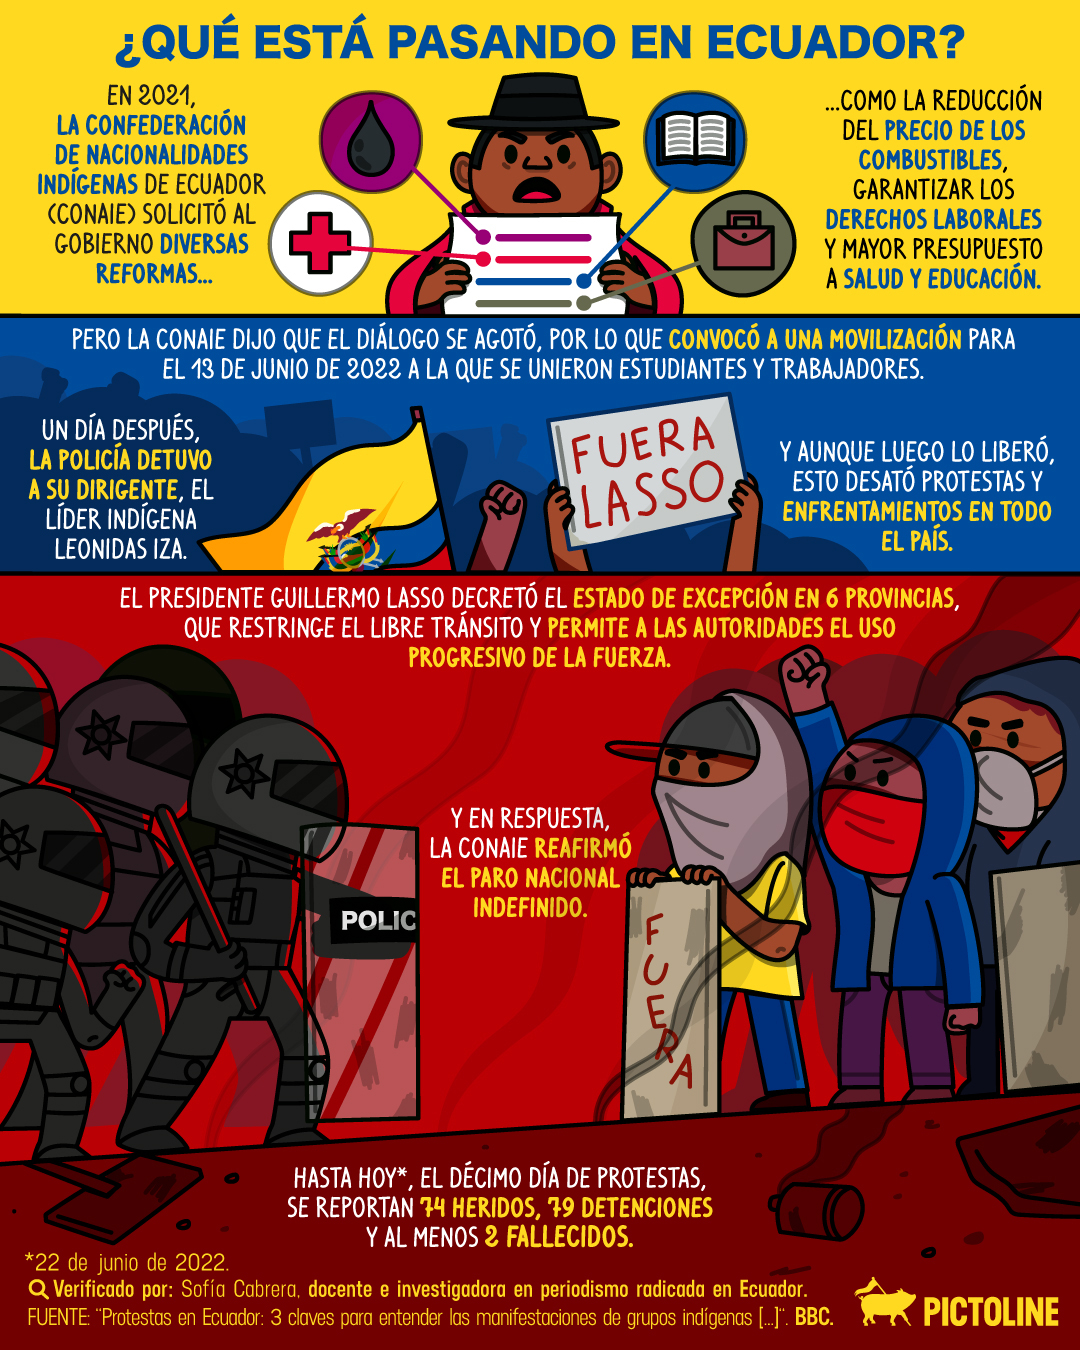 ¿Qué está pasando en Ecuador? 🇪🇨 Un breve resumen de la situación: #ecuador #resumen #protestas #manifestacion #movilizacion